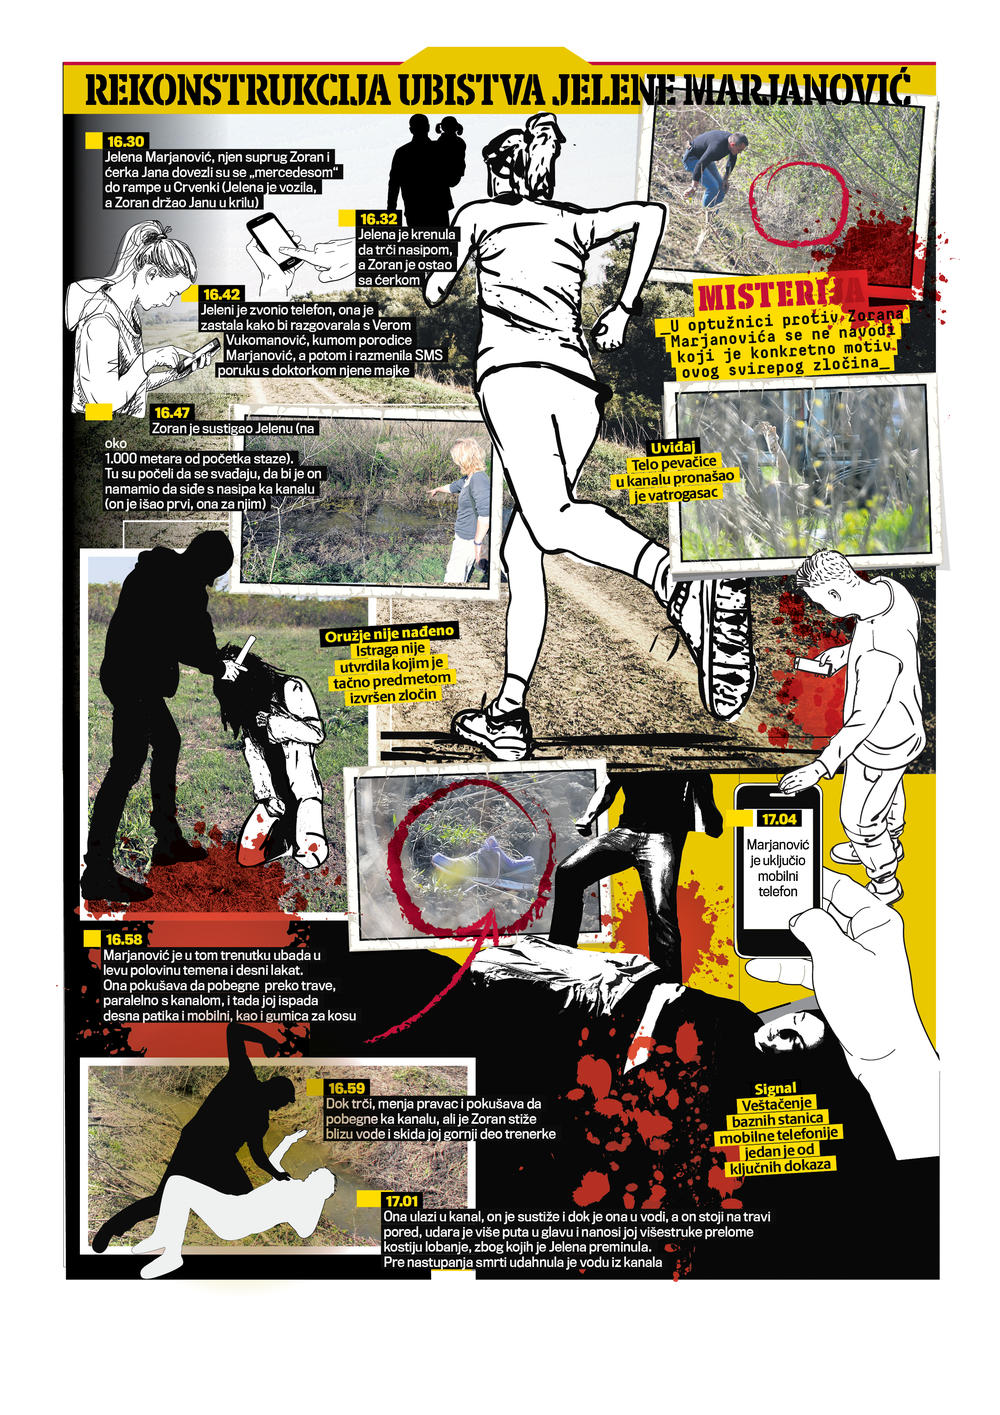 infografika, Rekonstrukcija ubistva, Jelena Marjanović, specijal Kurira